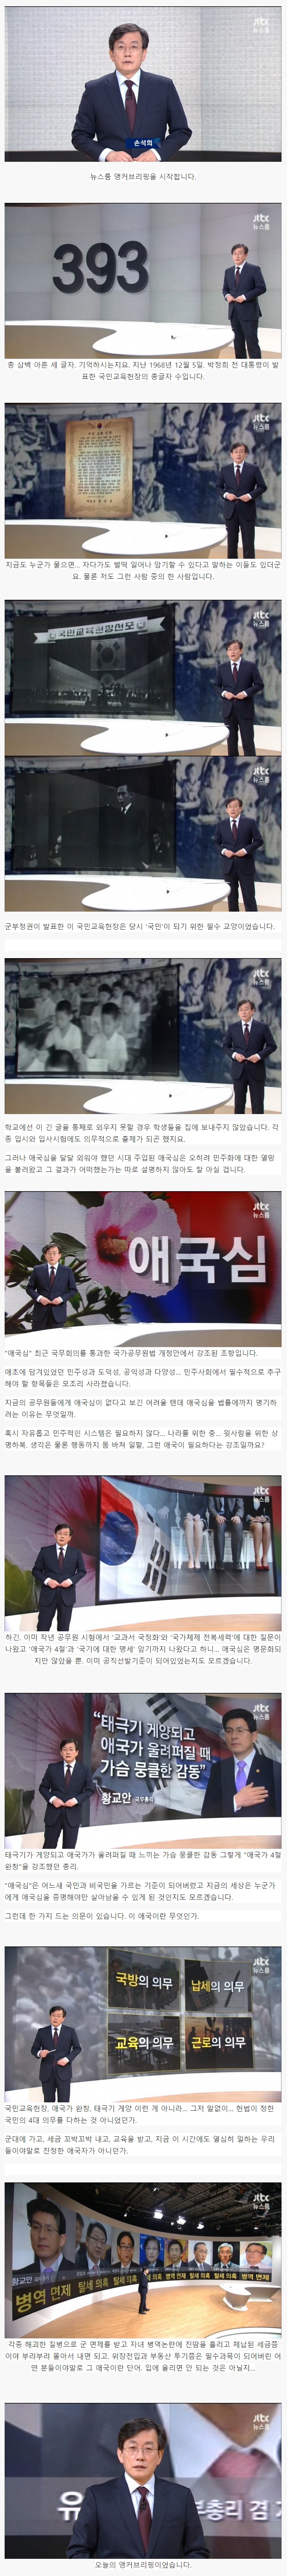 image.jpeg : JTBC 뉴스 브리핑